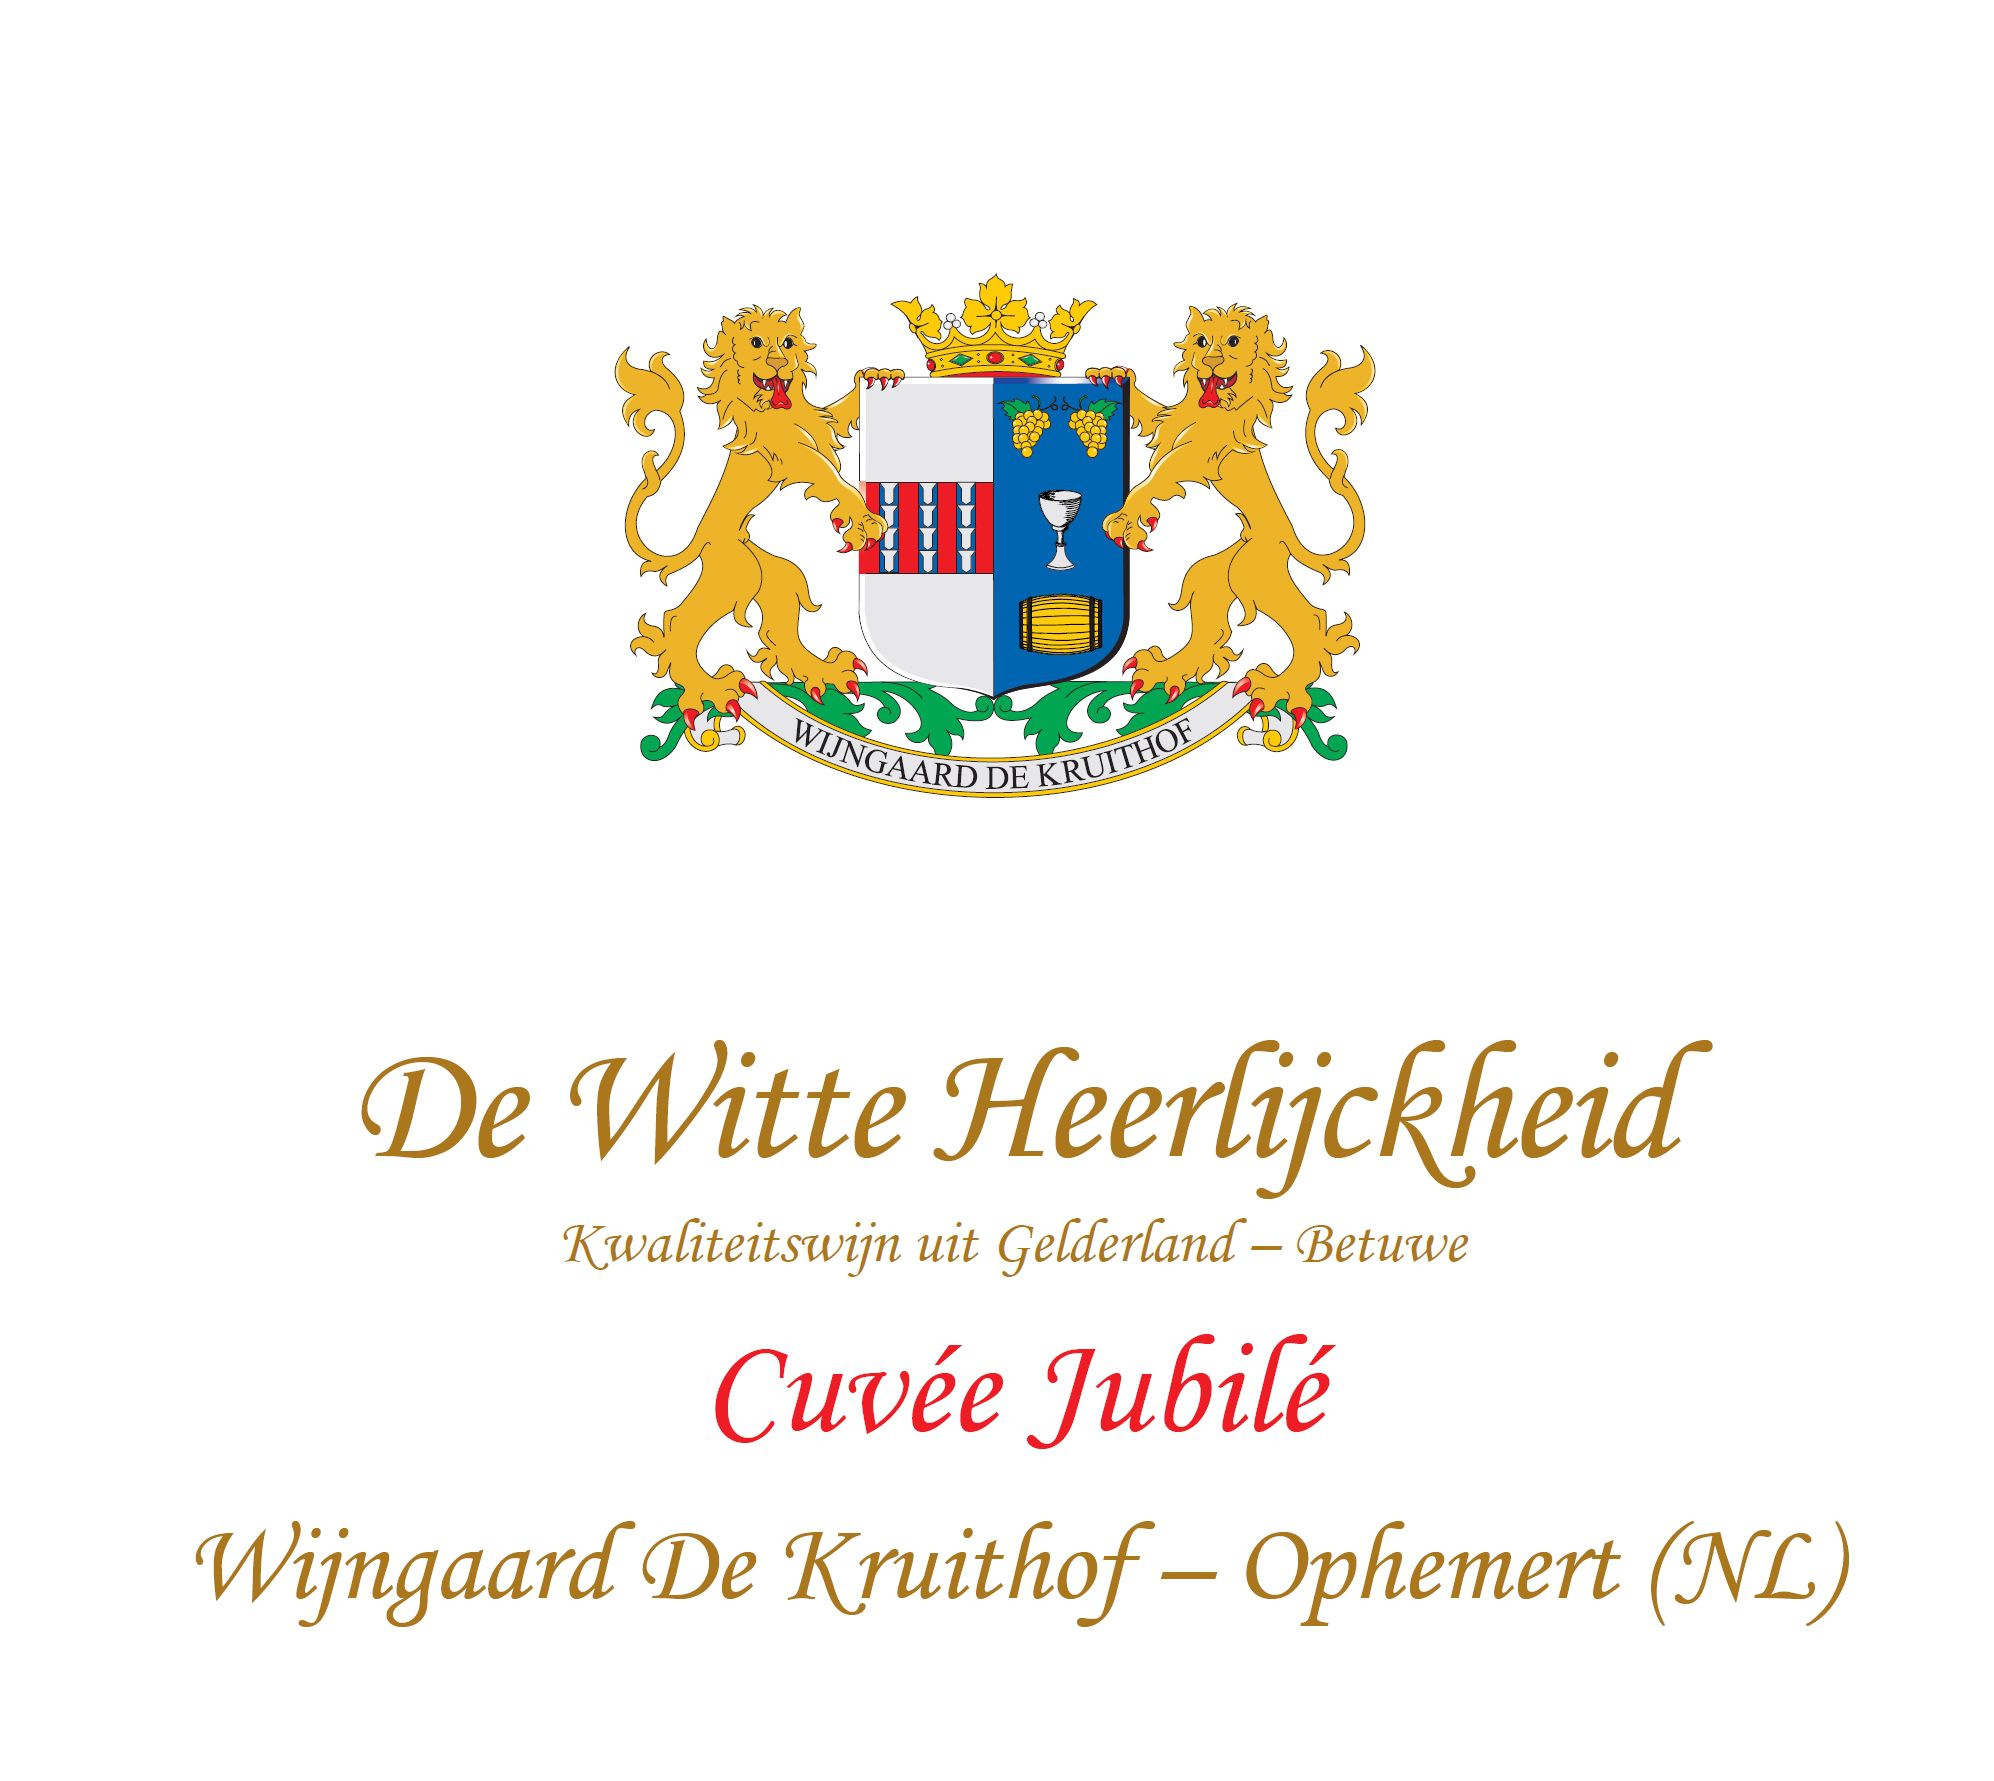 Wijngaard De Kruithof - De Witte Heerlijckheid Ambrozijn